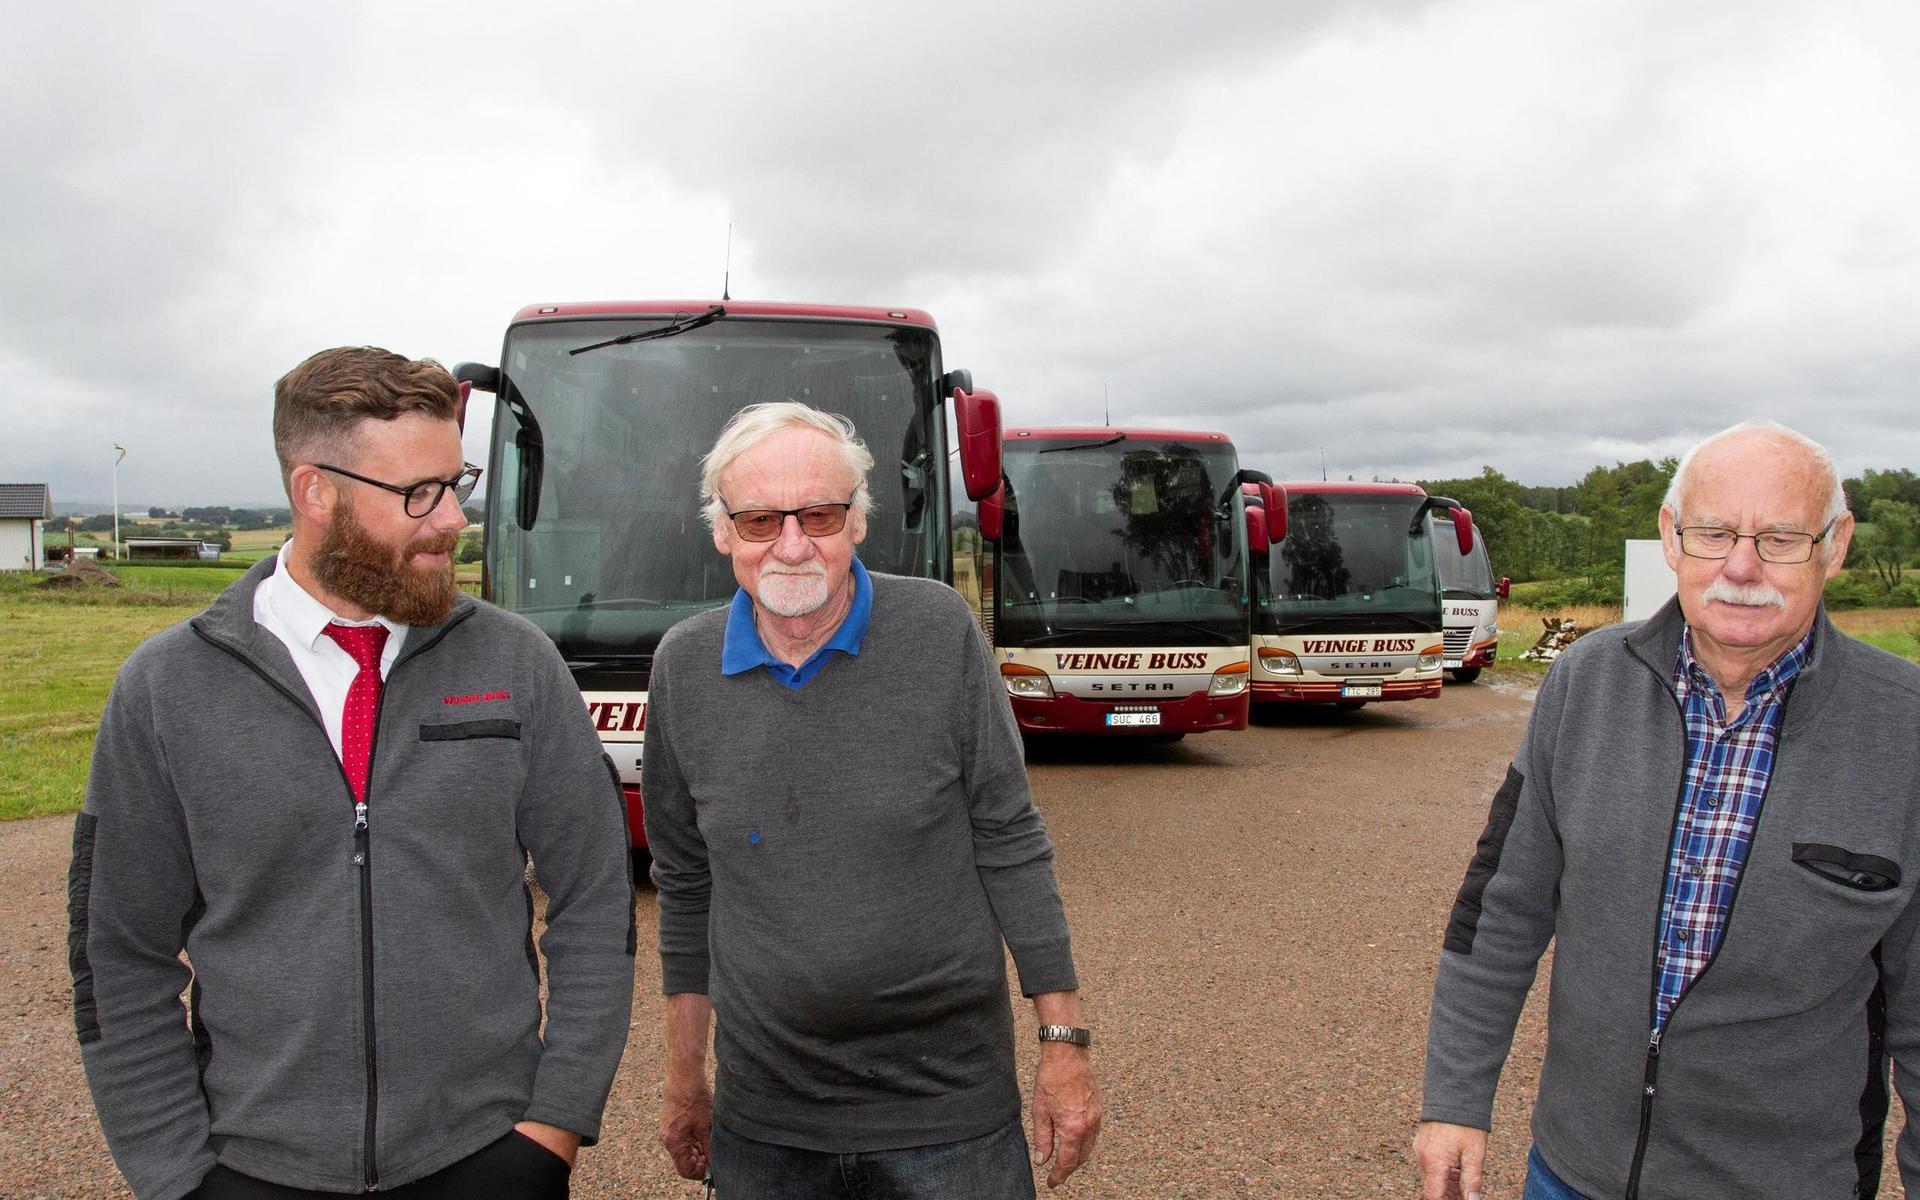 Veinge buss är ett familjeföretag i flera generationer. Jobbarkompisar är Fredrik Karlsson, hans farbror Bengt-Göran, pappa Karl-Johan och farbrorn Per-Rune, samt Fredriks mamma och hans fru.